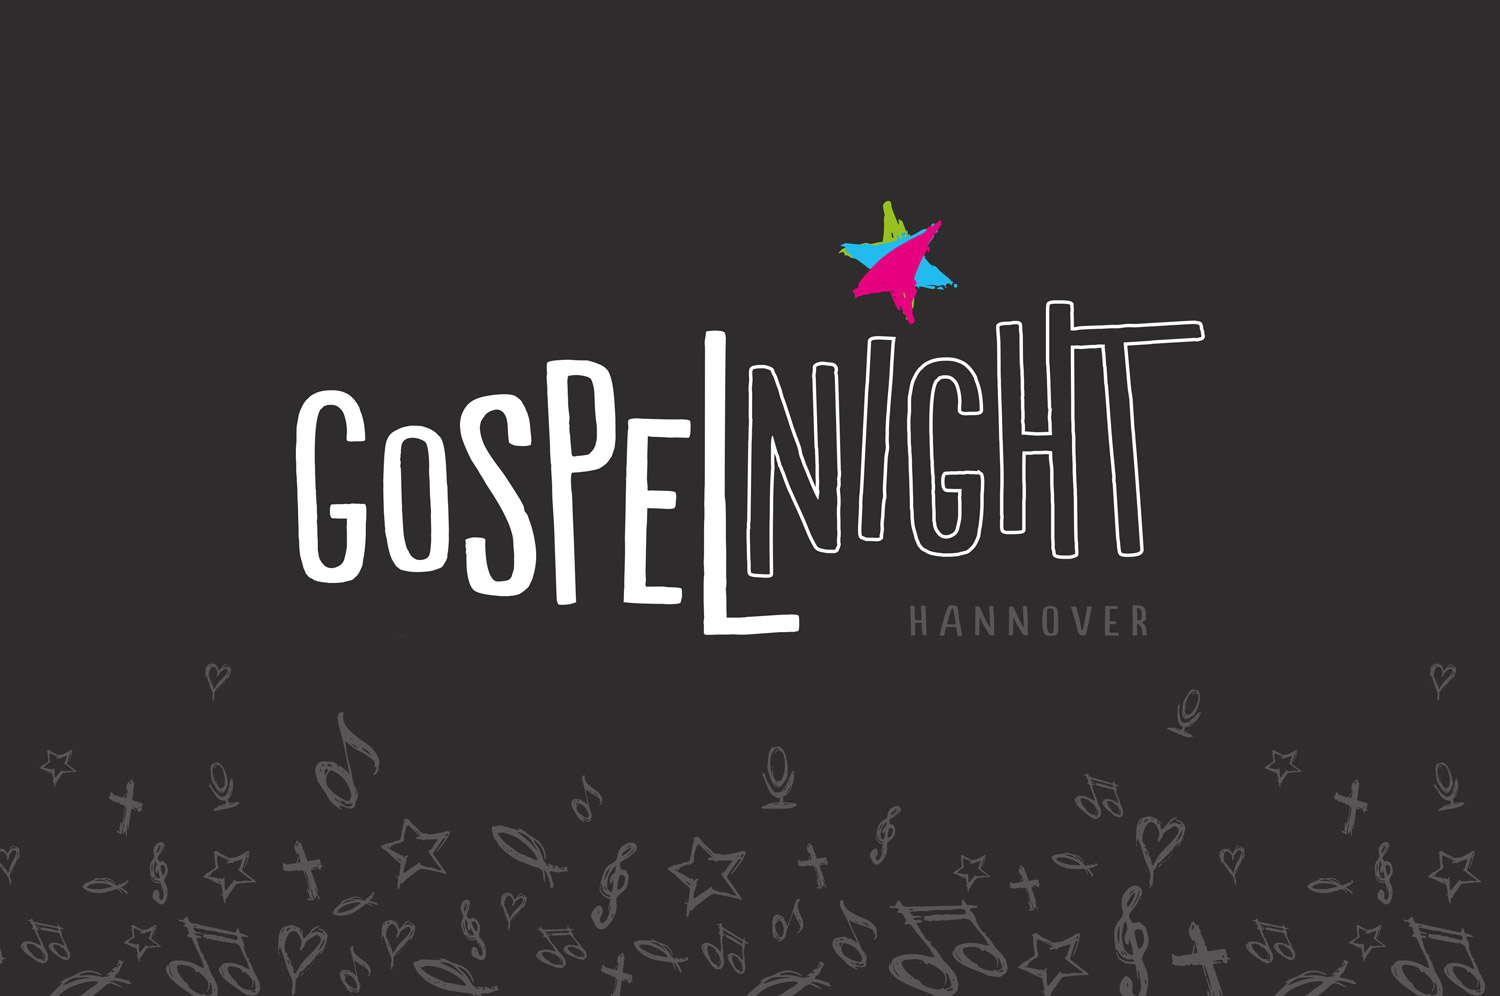  Logogestaltung für die Gospelnight Hannover